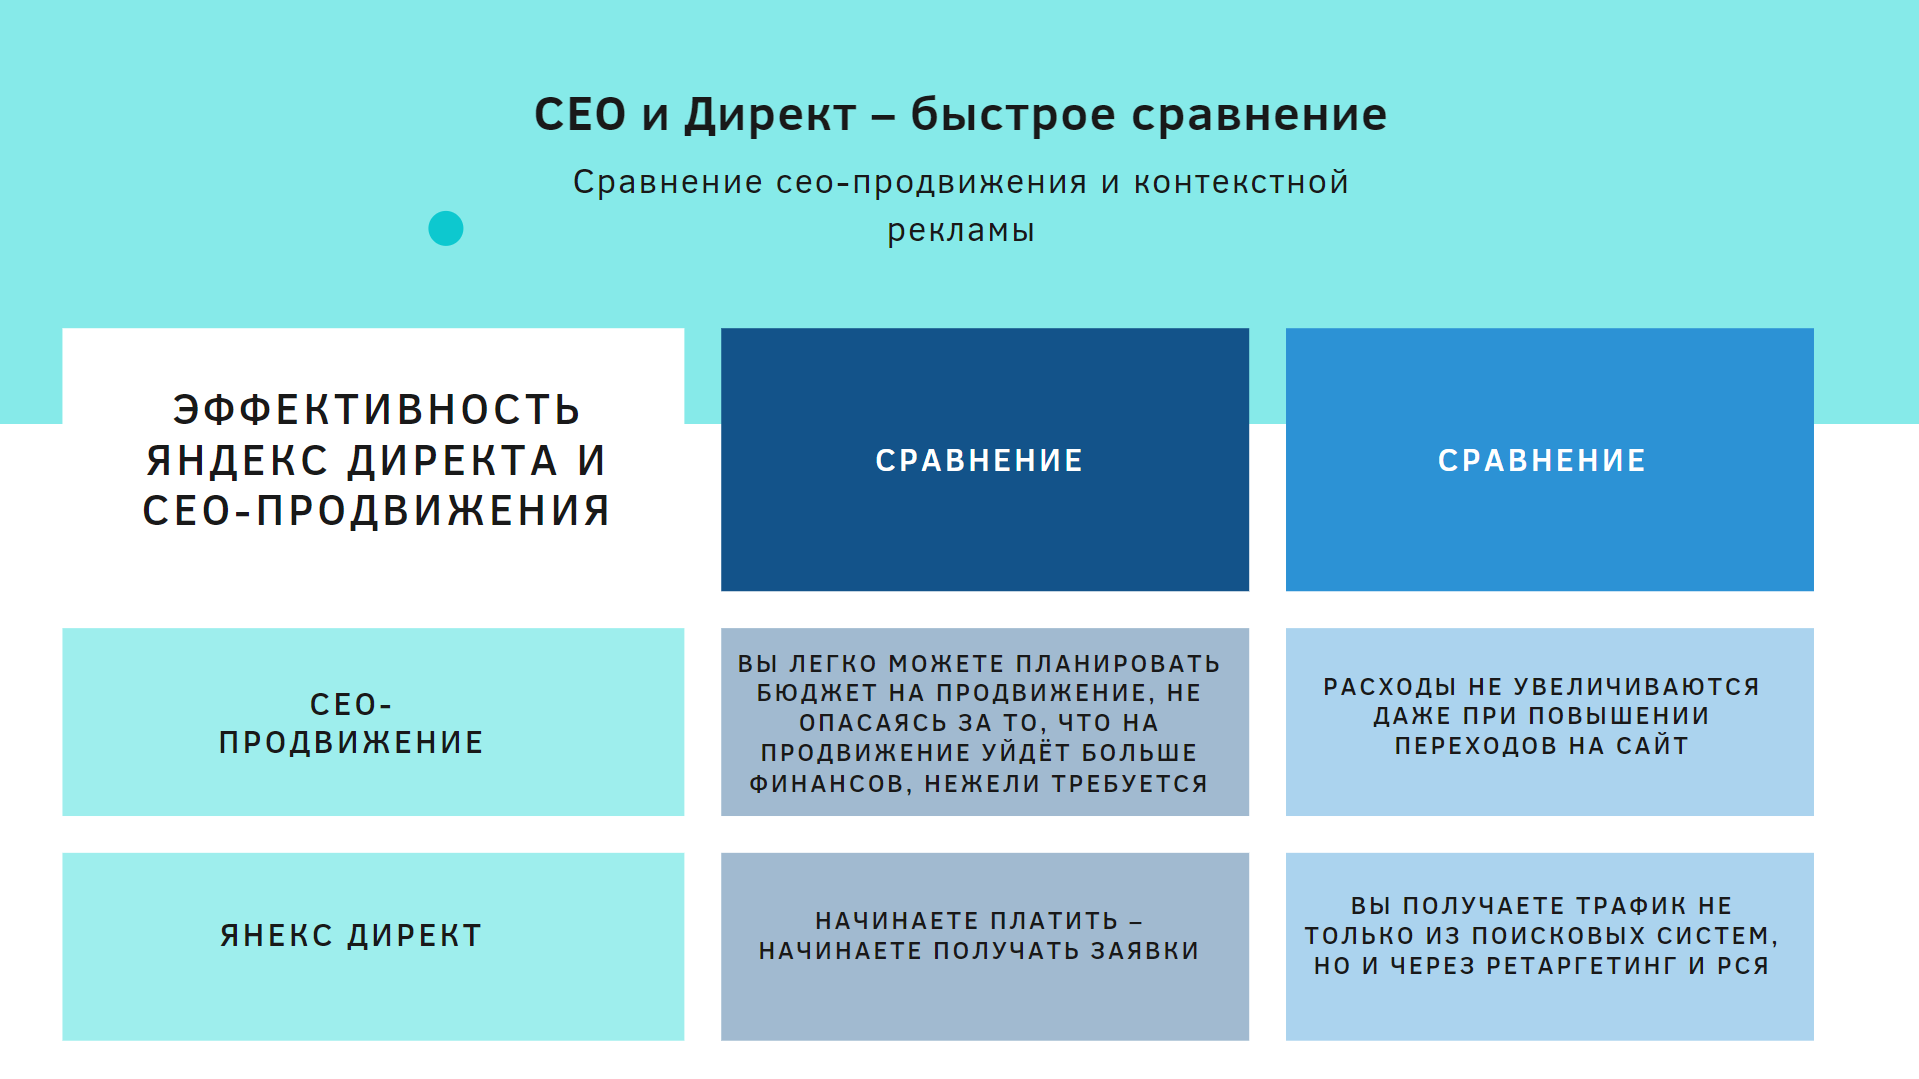 Эффективность Яндекс Директа и СЕО продвижения